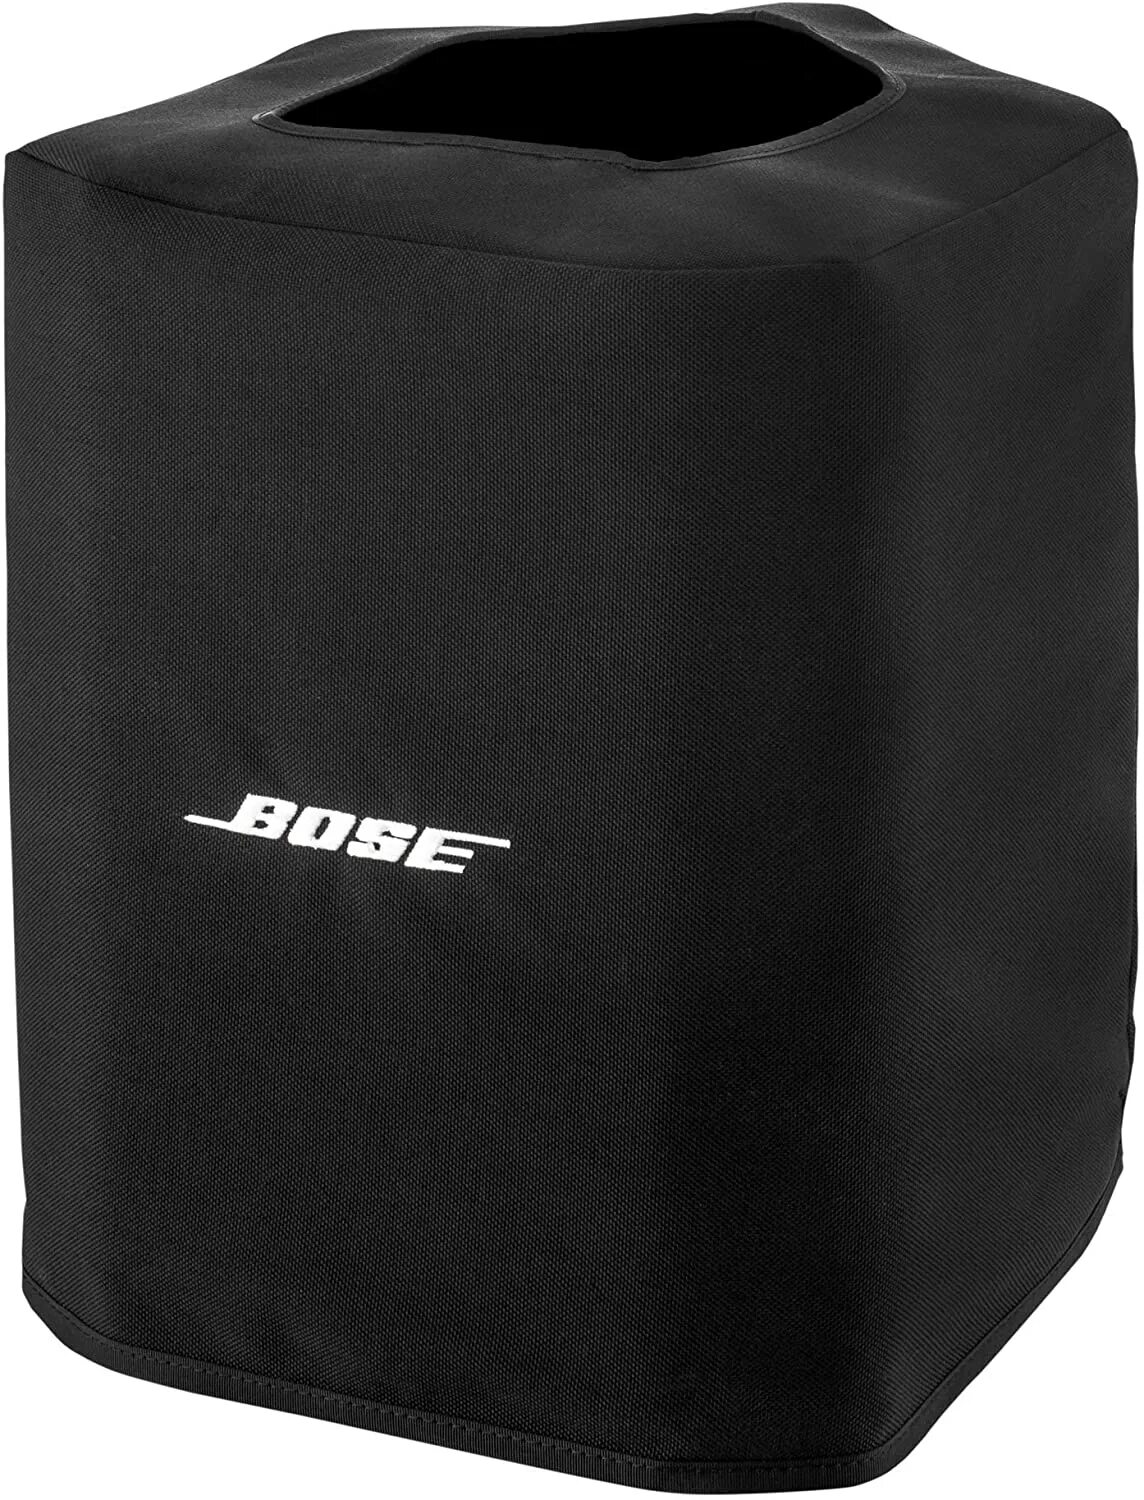 Bose s1 Pro чехол. Bose s1 Pro. Колонка Bose s1 Pro. Bose s1 Pro Slip Case. Bose s1